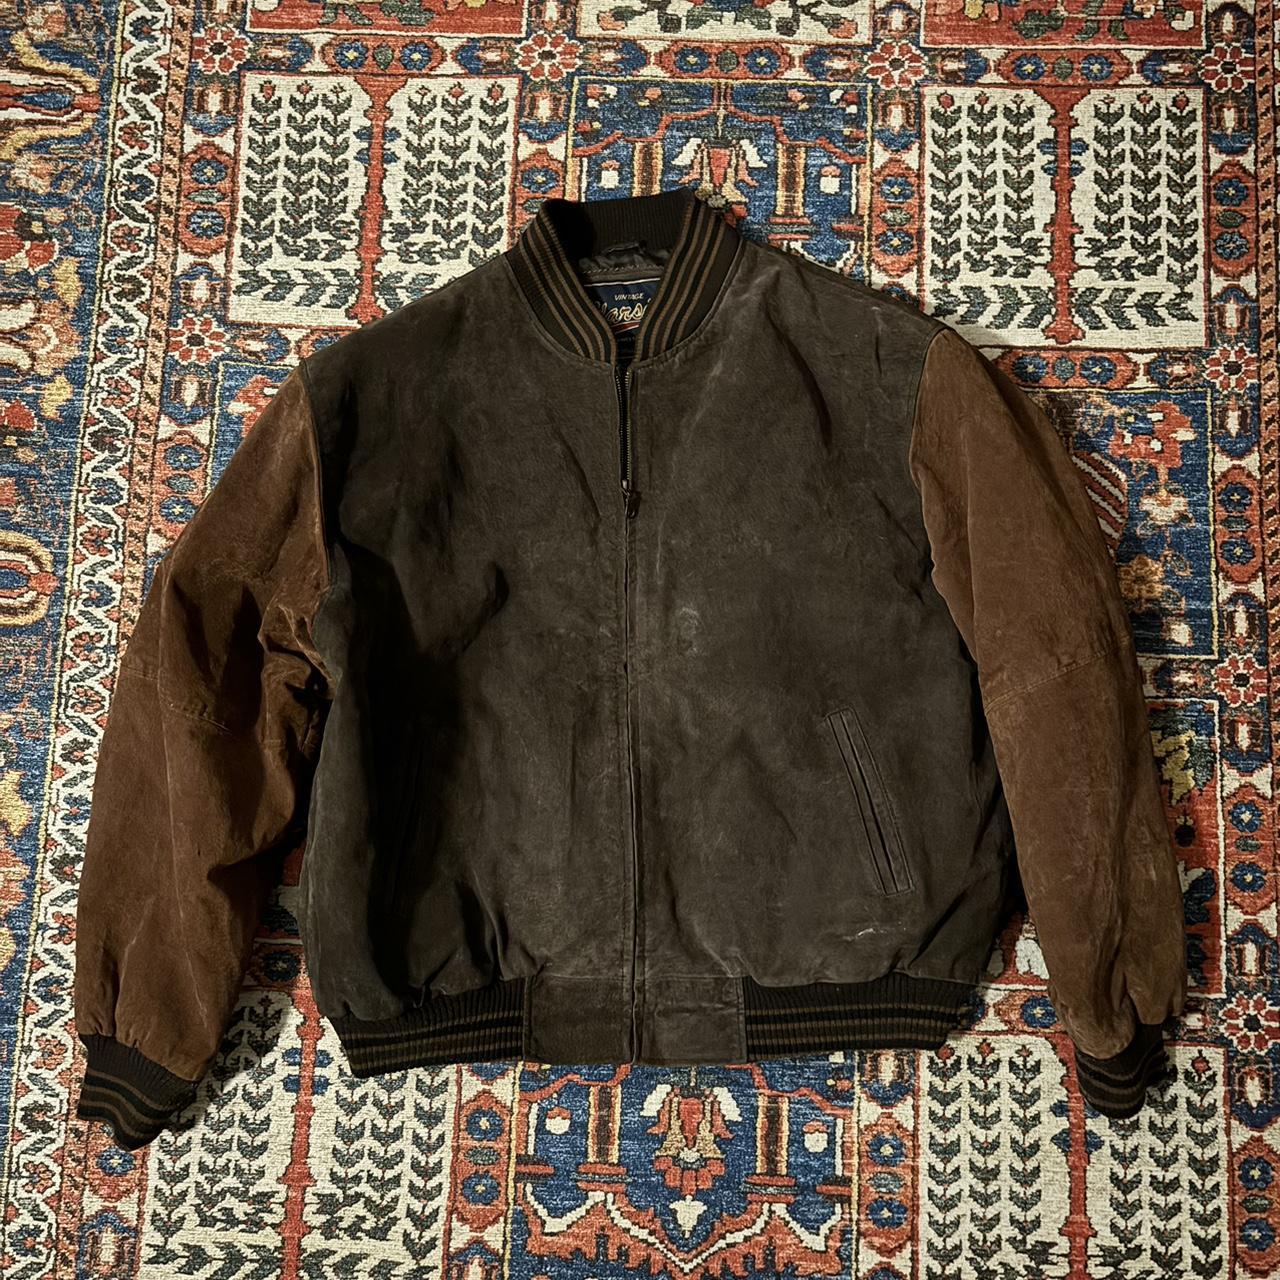 Vintage Brown Varsity Jacket Excellent Quality Size:... - Depop